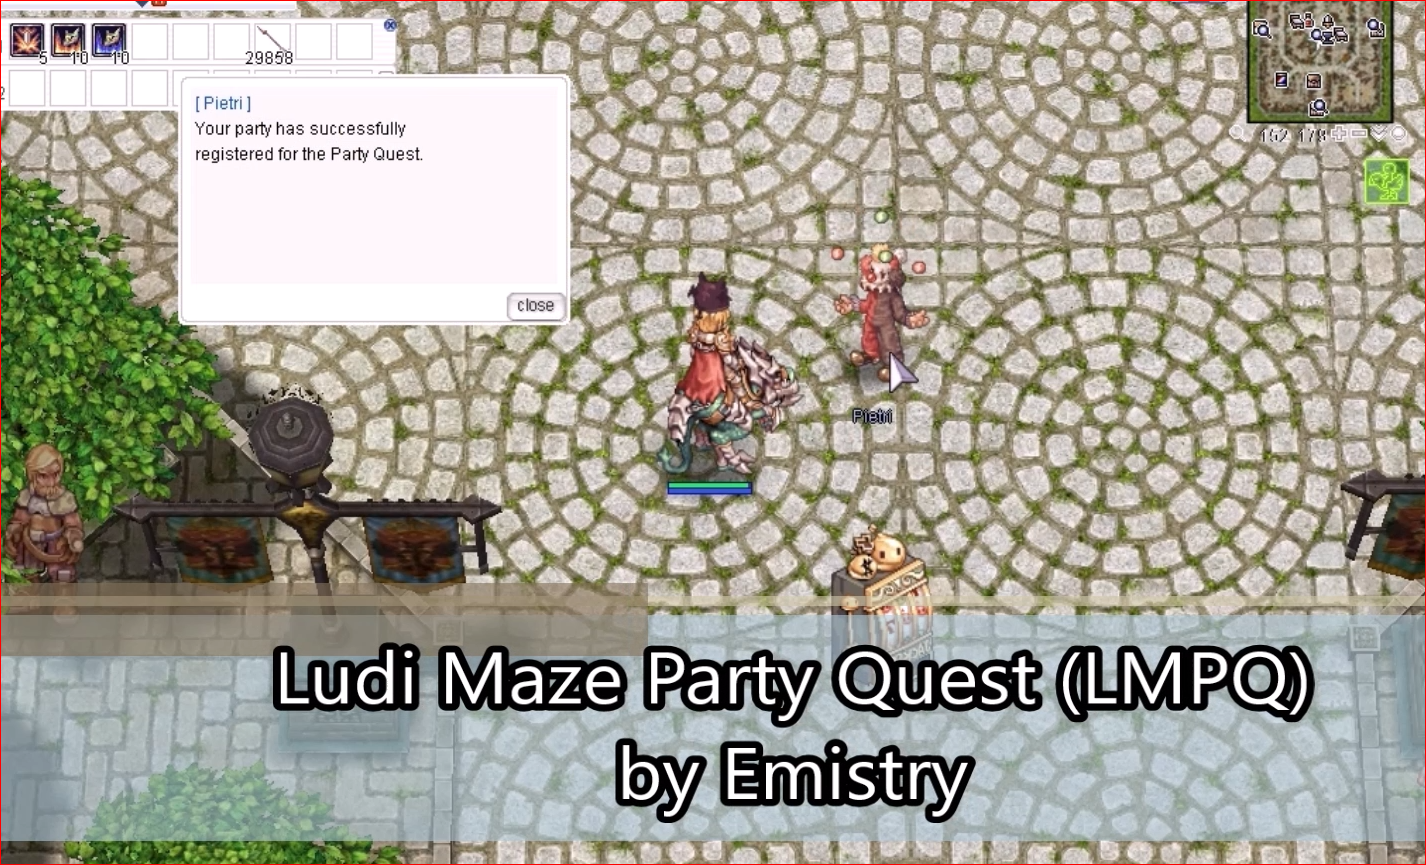 LMPQ - Ludi Maze Party Quest